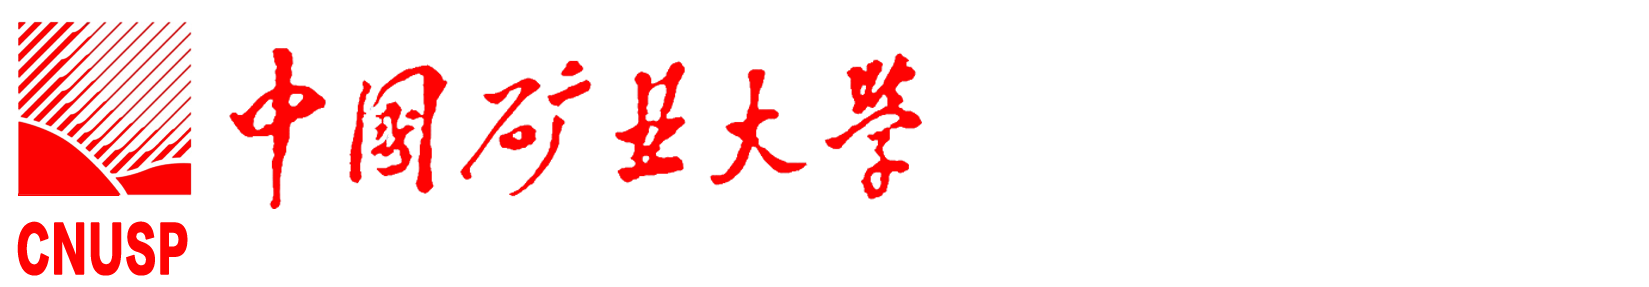 中国矿业大学国家大学科技园